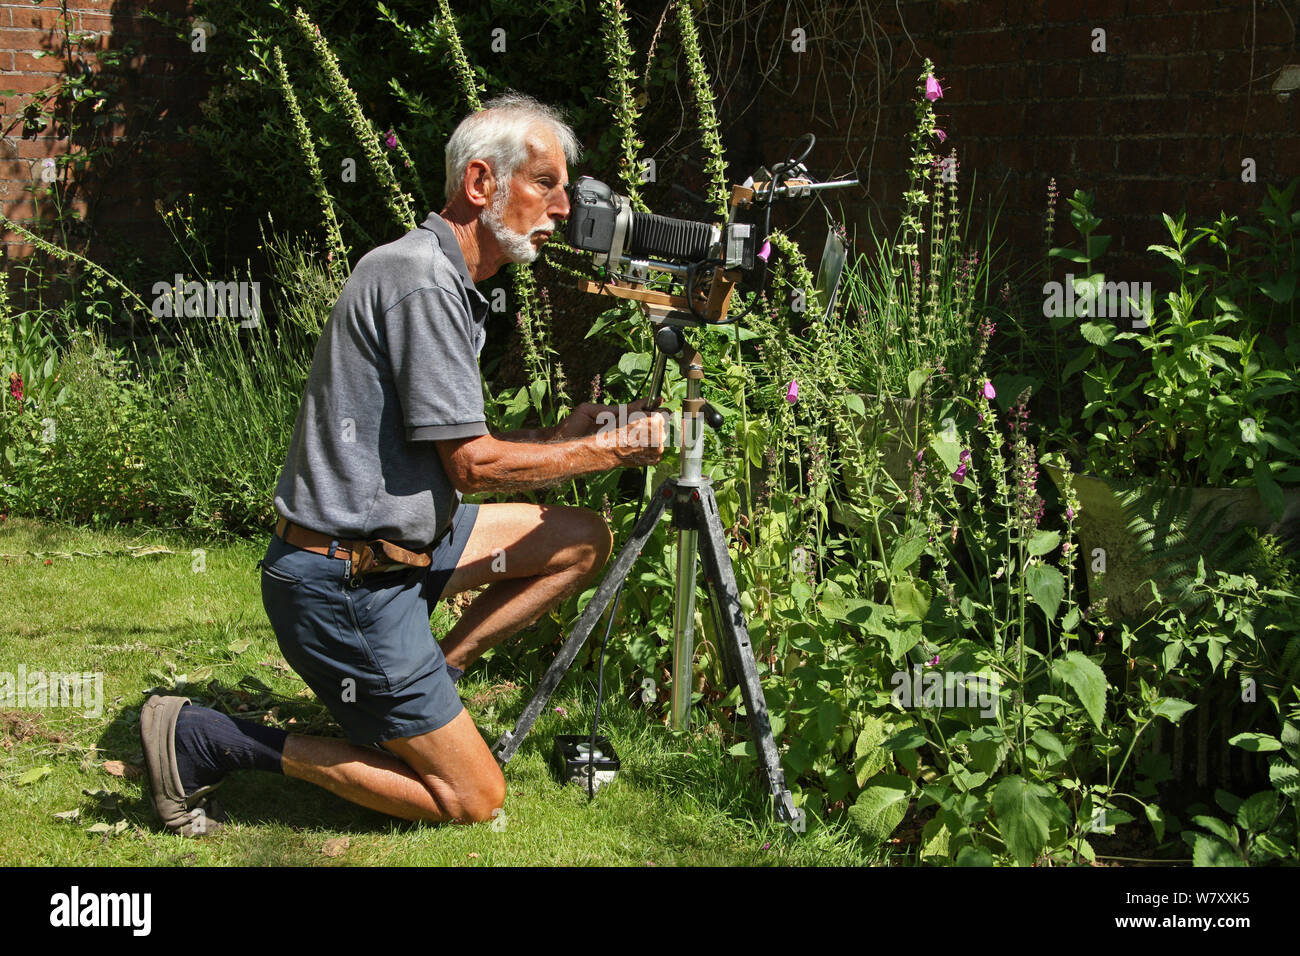 Photographe Kim Taylor à l'aide de flash et l'appareil photo de l'équipement pour close-up photography in garden, juillet 2013. Banque D'Images